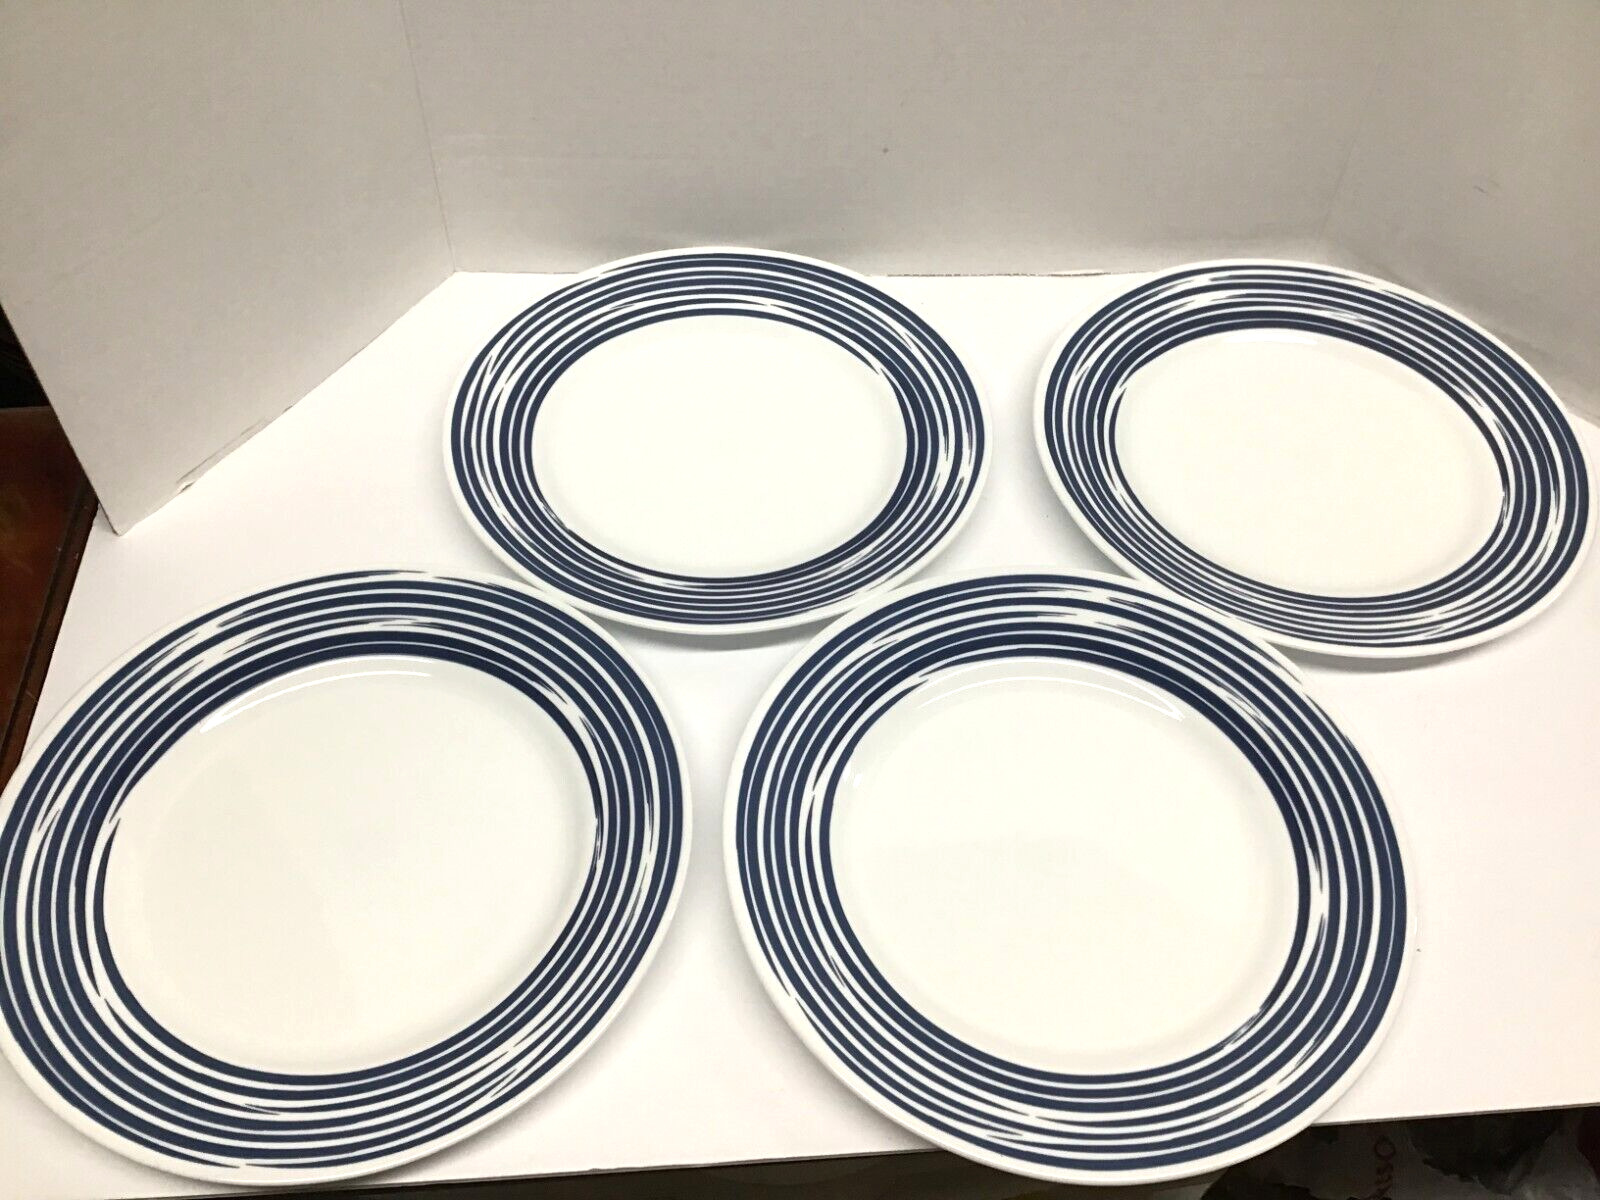 Correlle Vitrelle 10.75 inch Cobalt Blue Multi Ring Trim Dinner Plates Set of 4